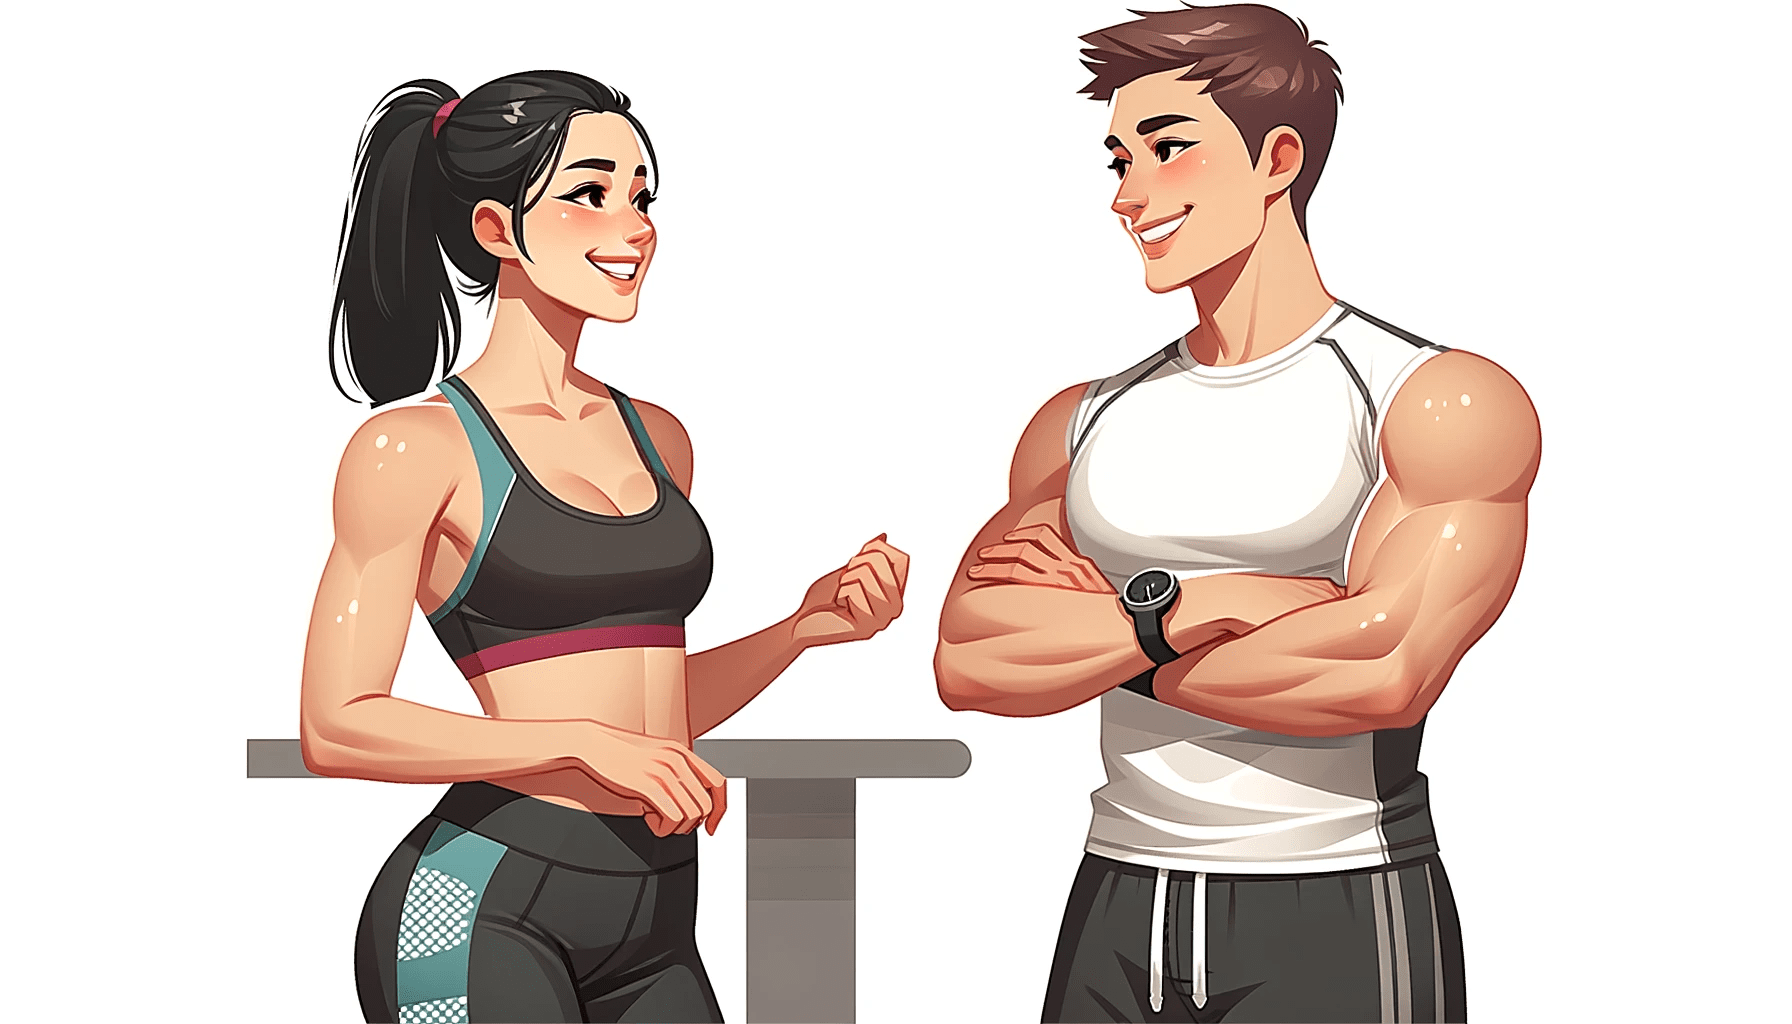 Getting a boyfriend a the gym